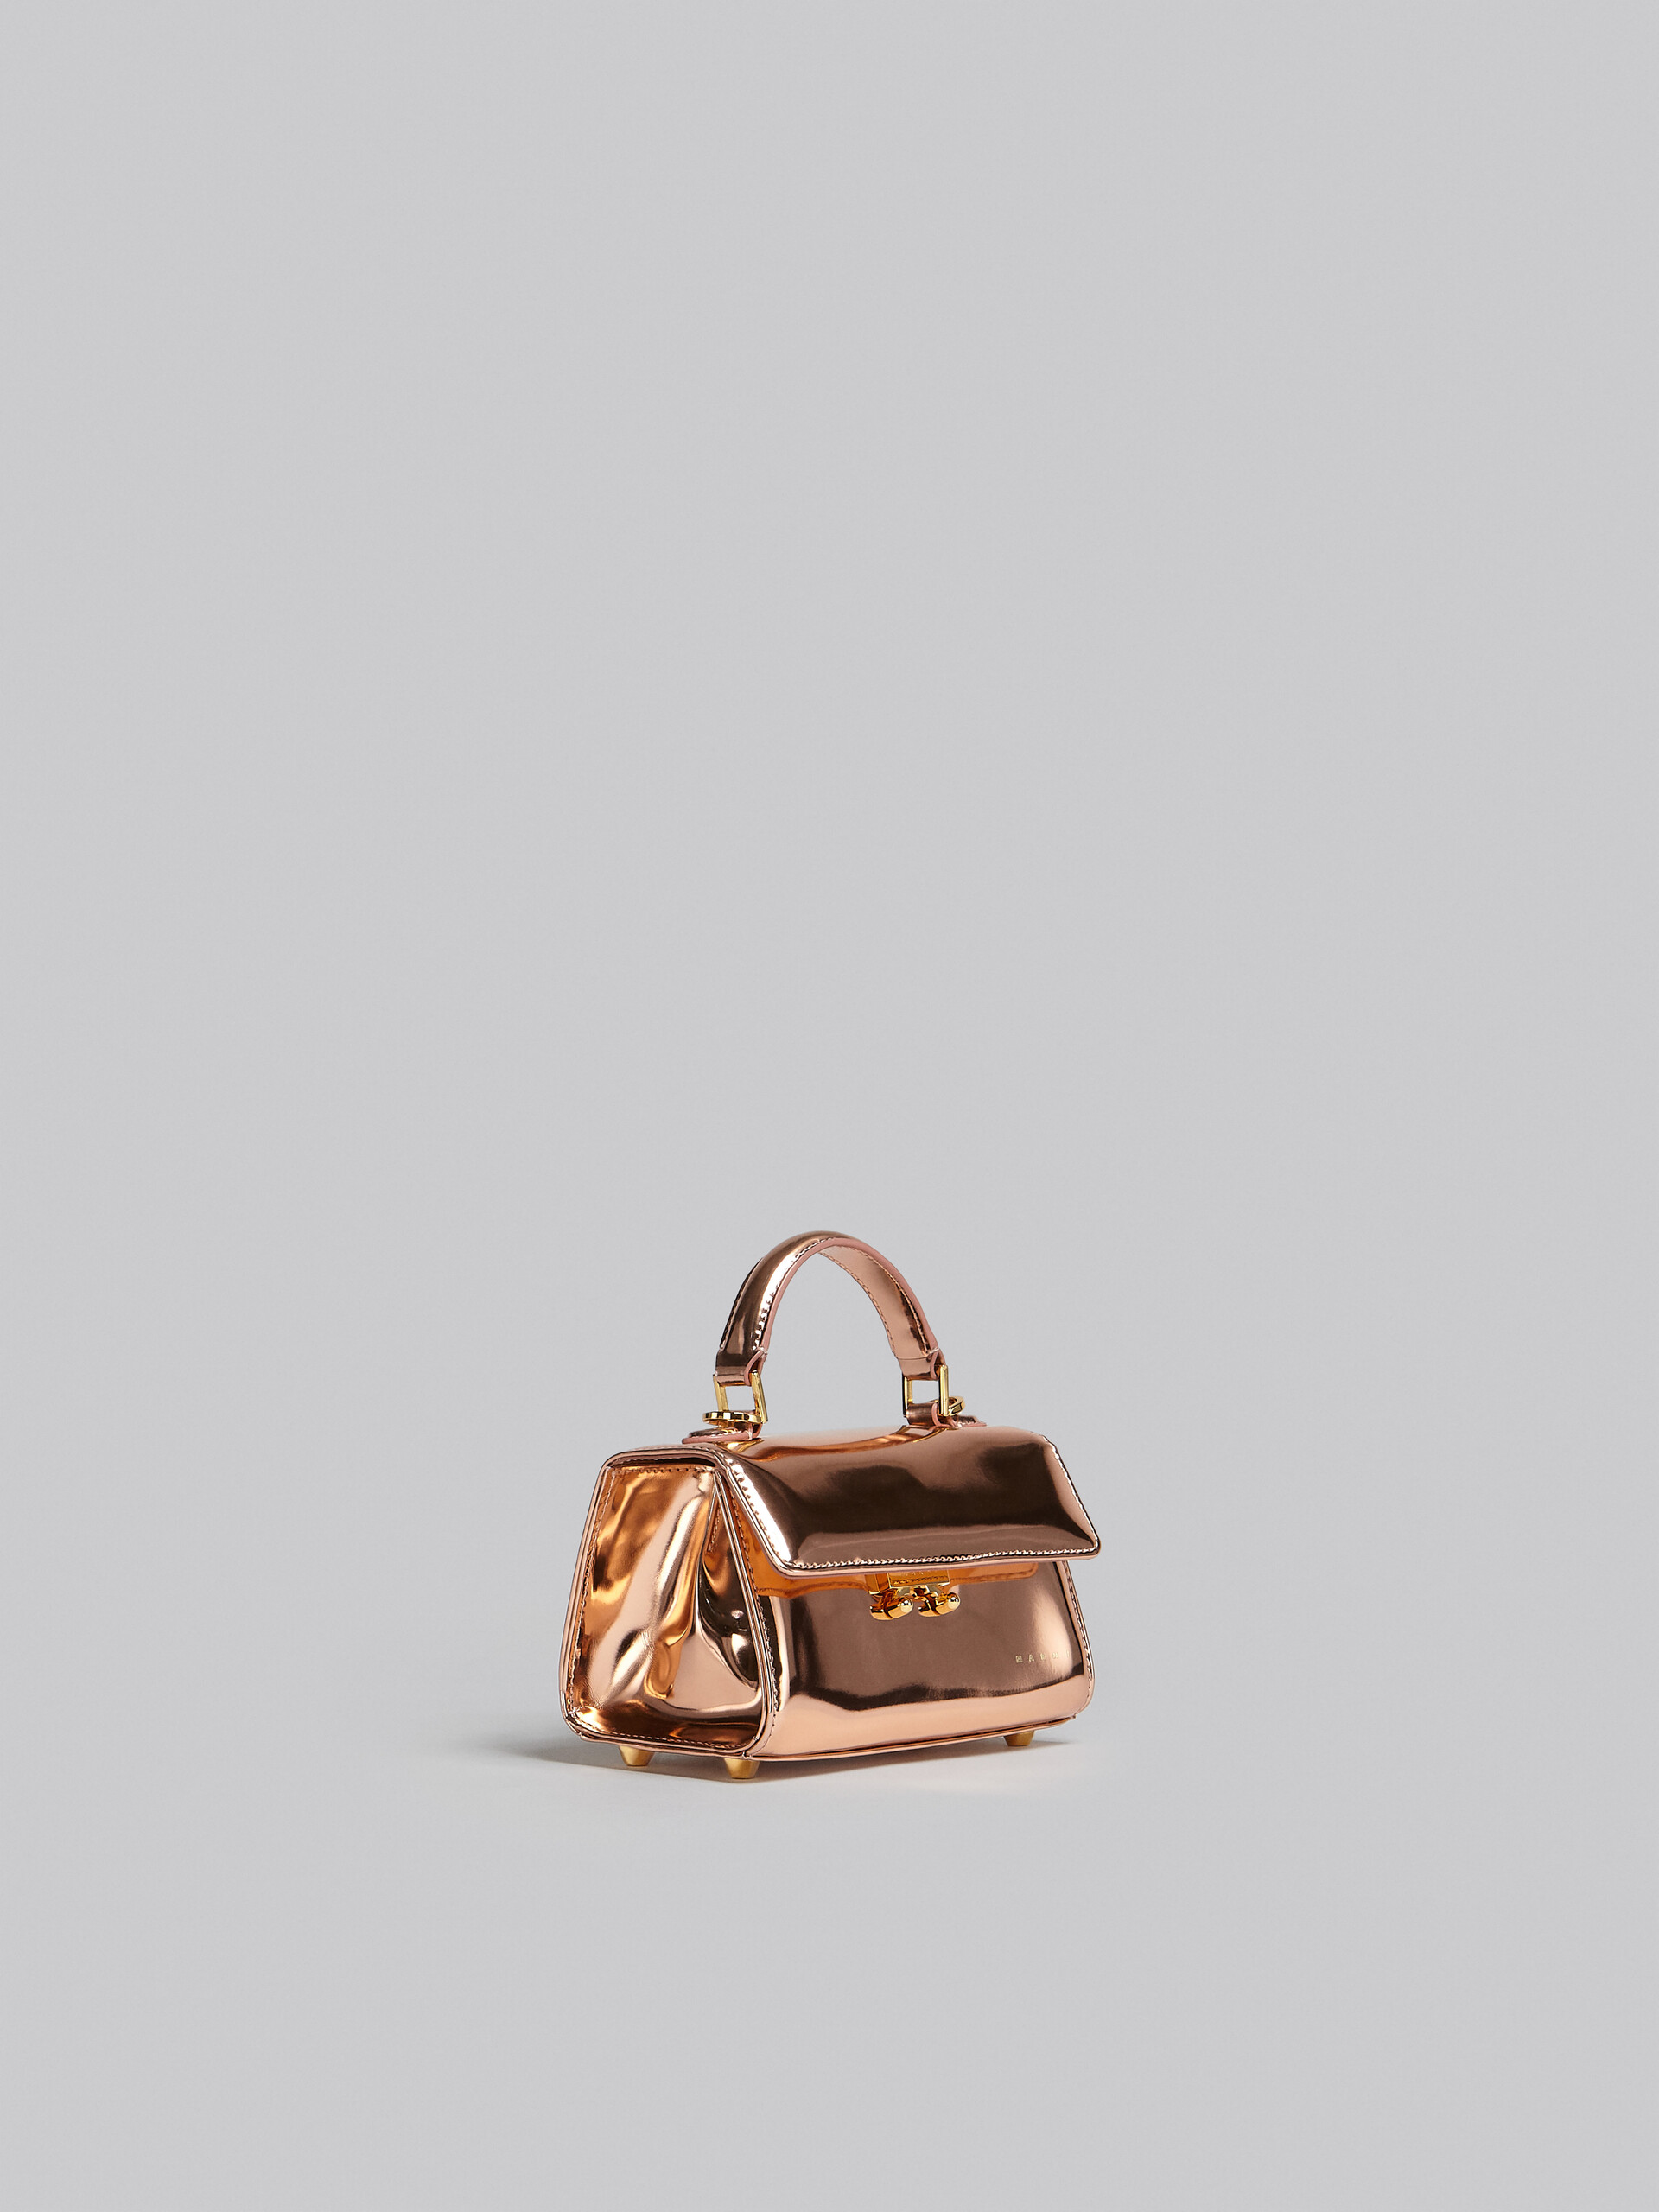 Relativity Bag Mini in pelle specchiata oro rosa - Borse a mano - Image 6